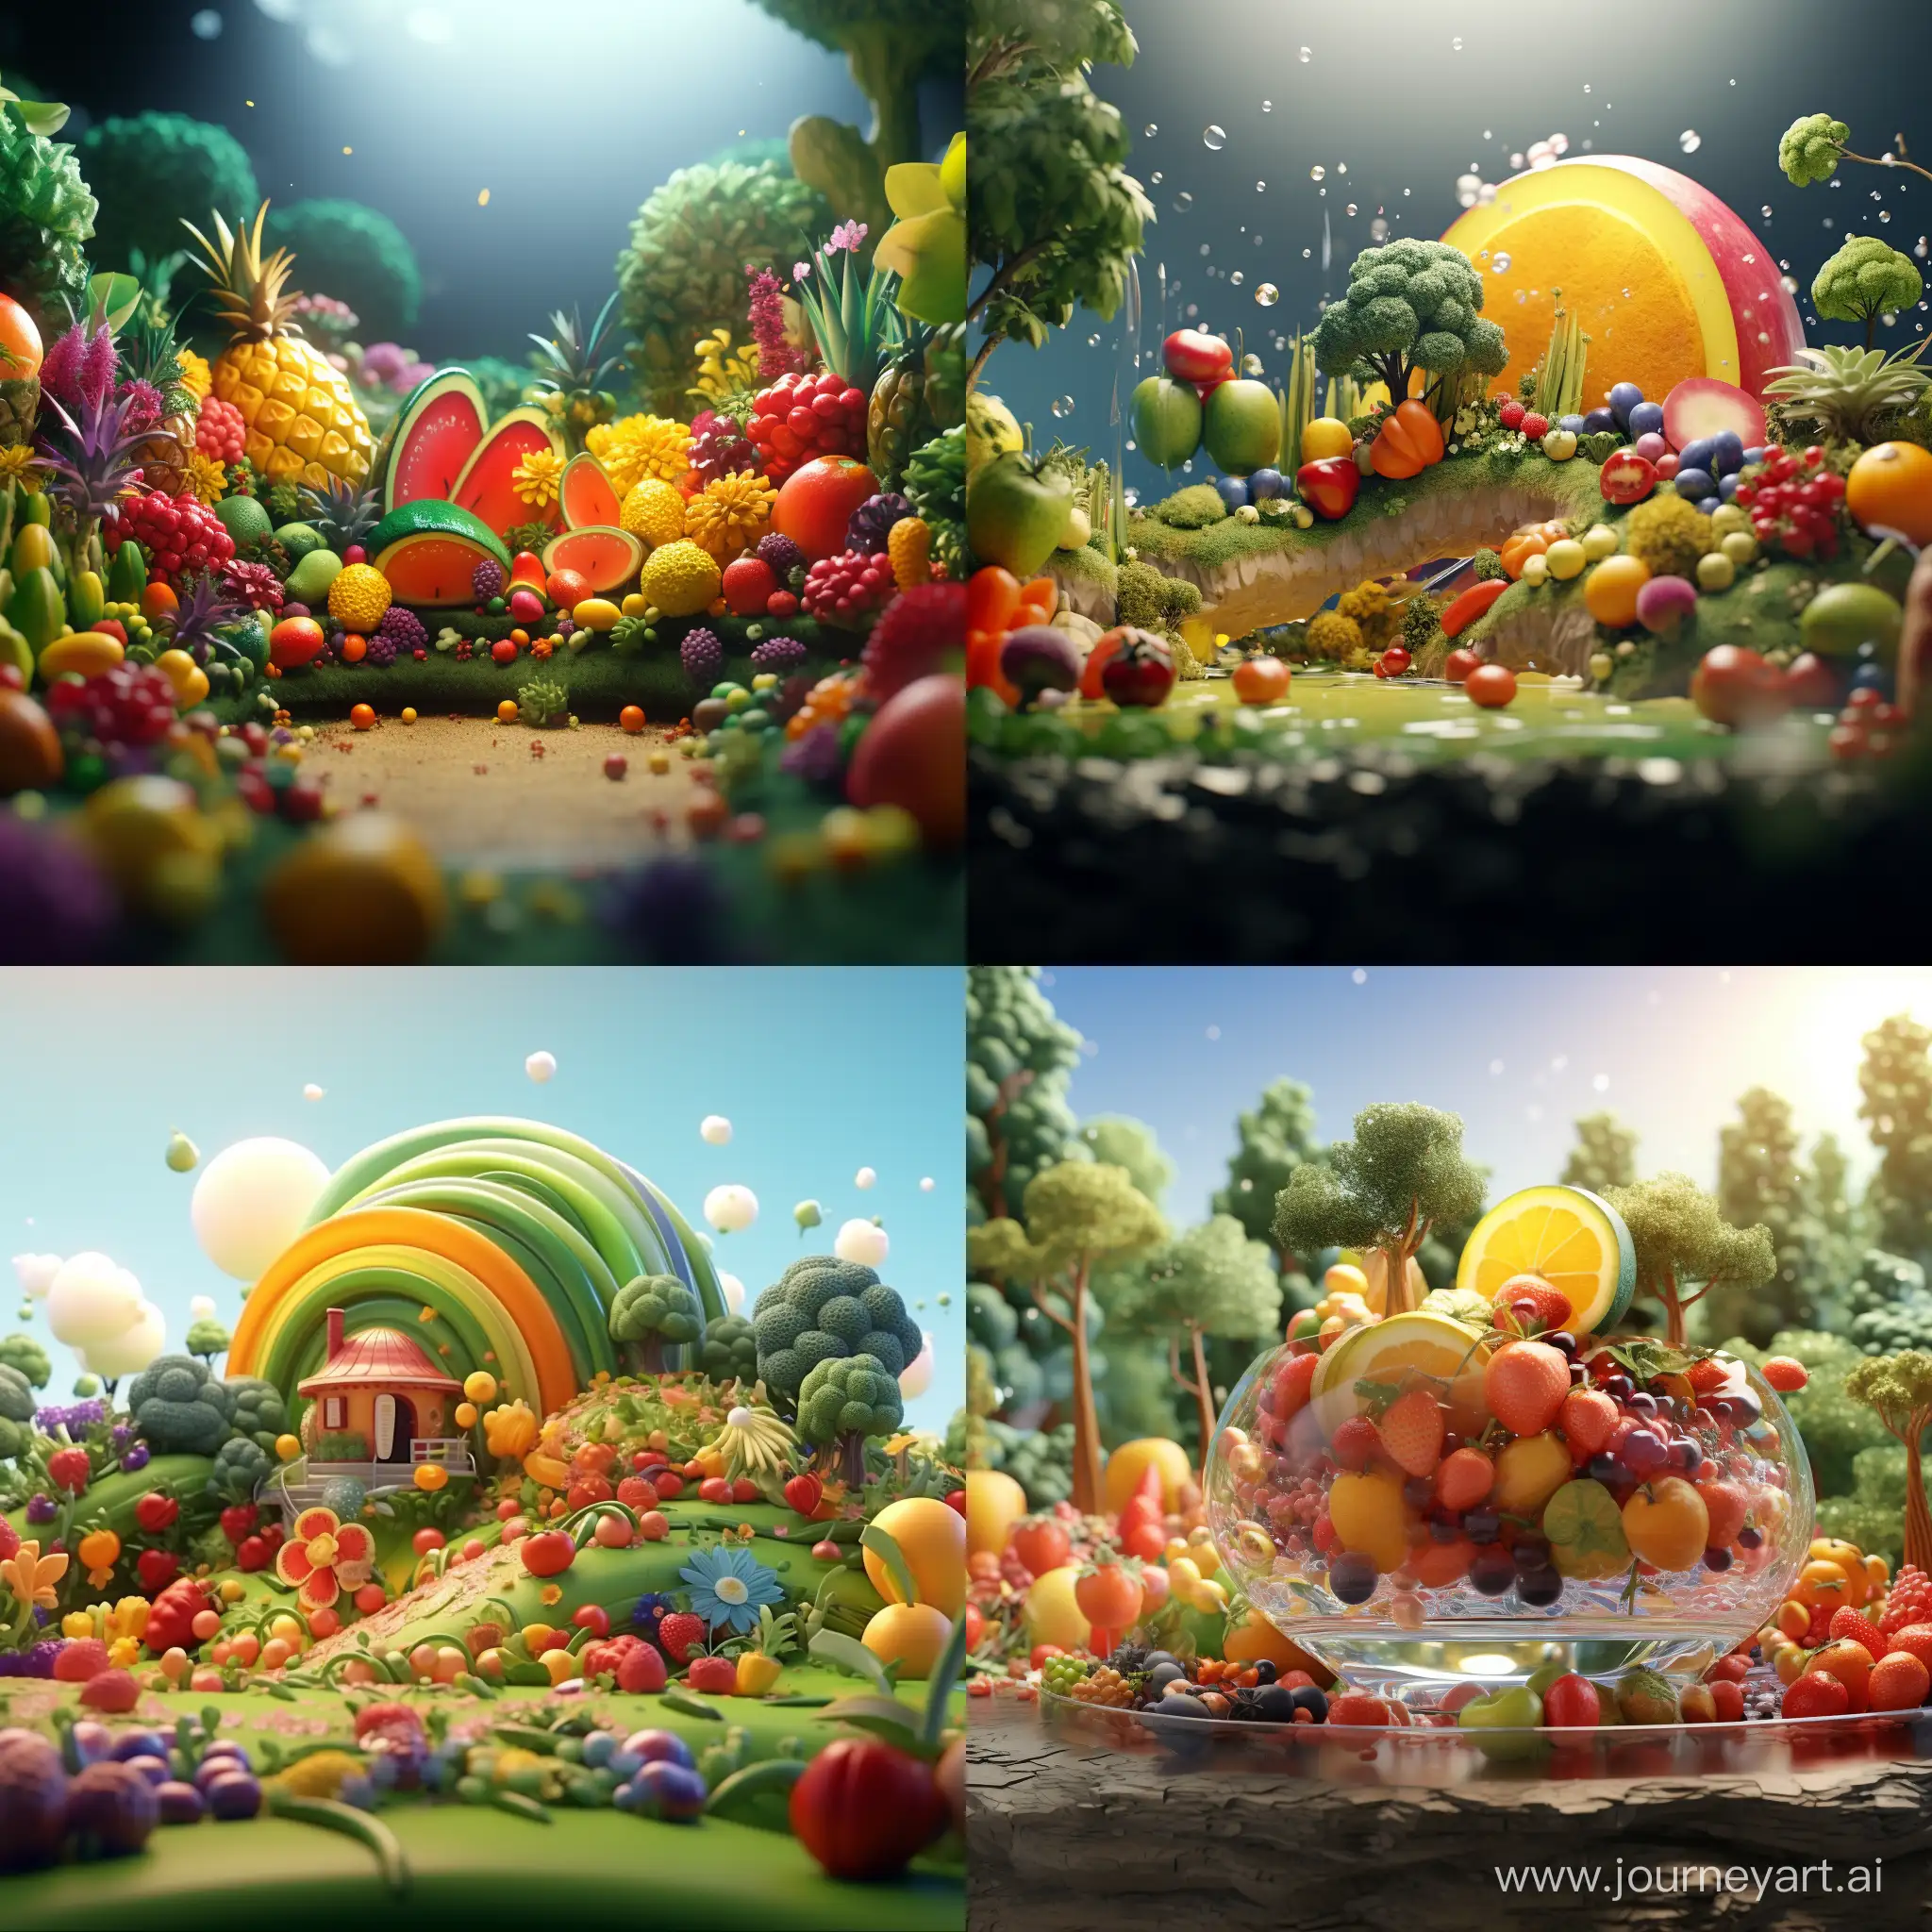 Vibrant-3D-Animation-of-an-Edible-Rainbow